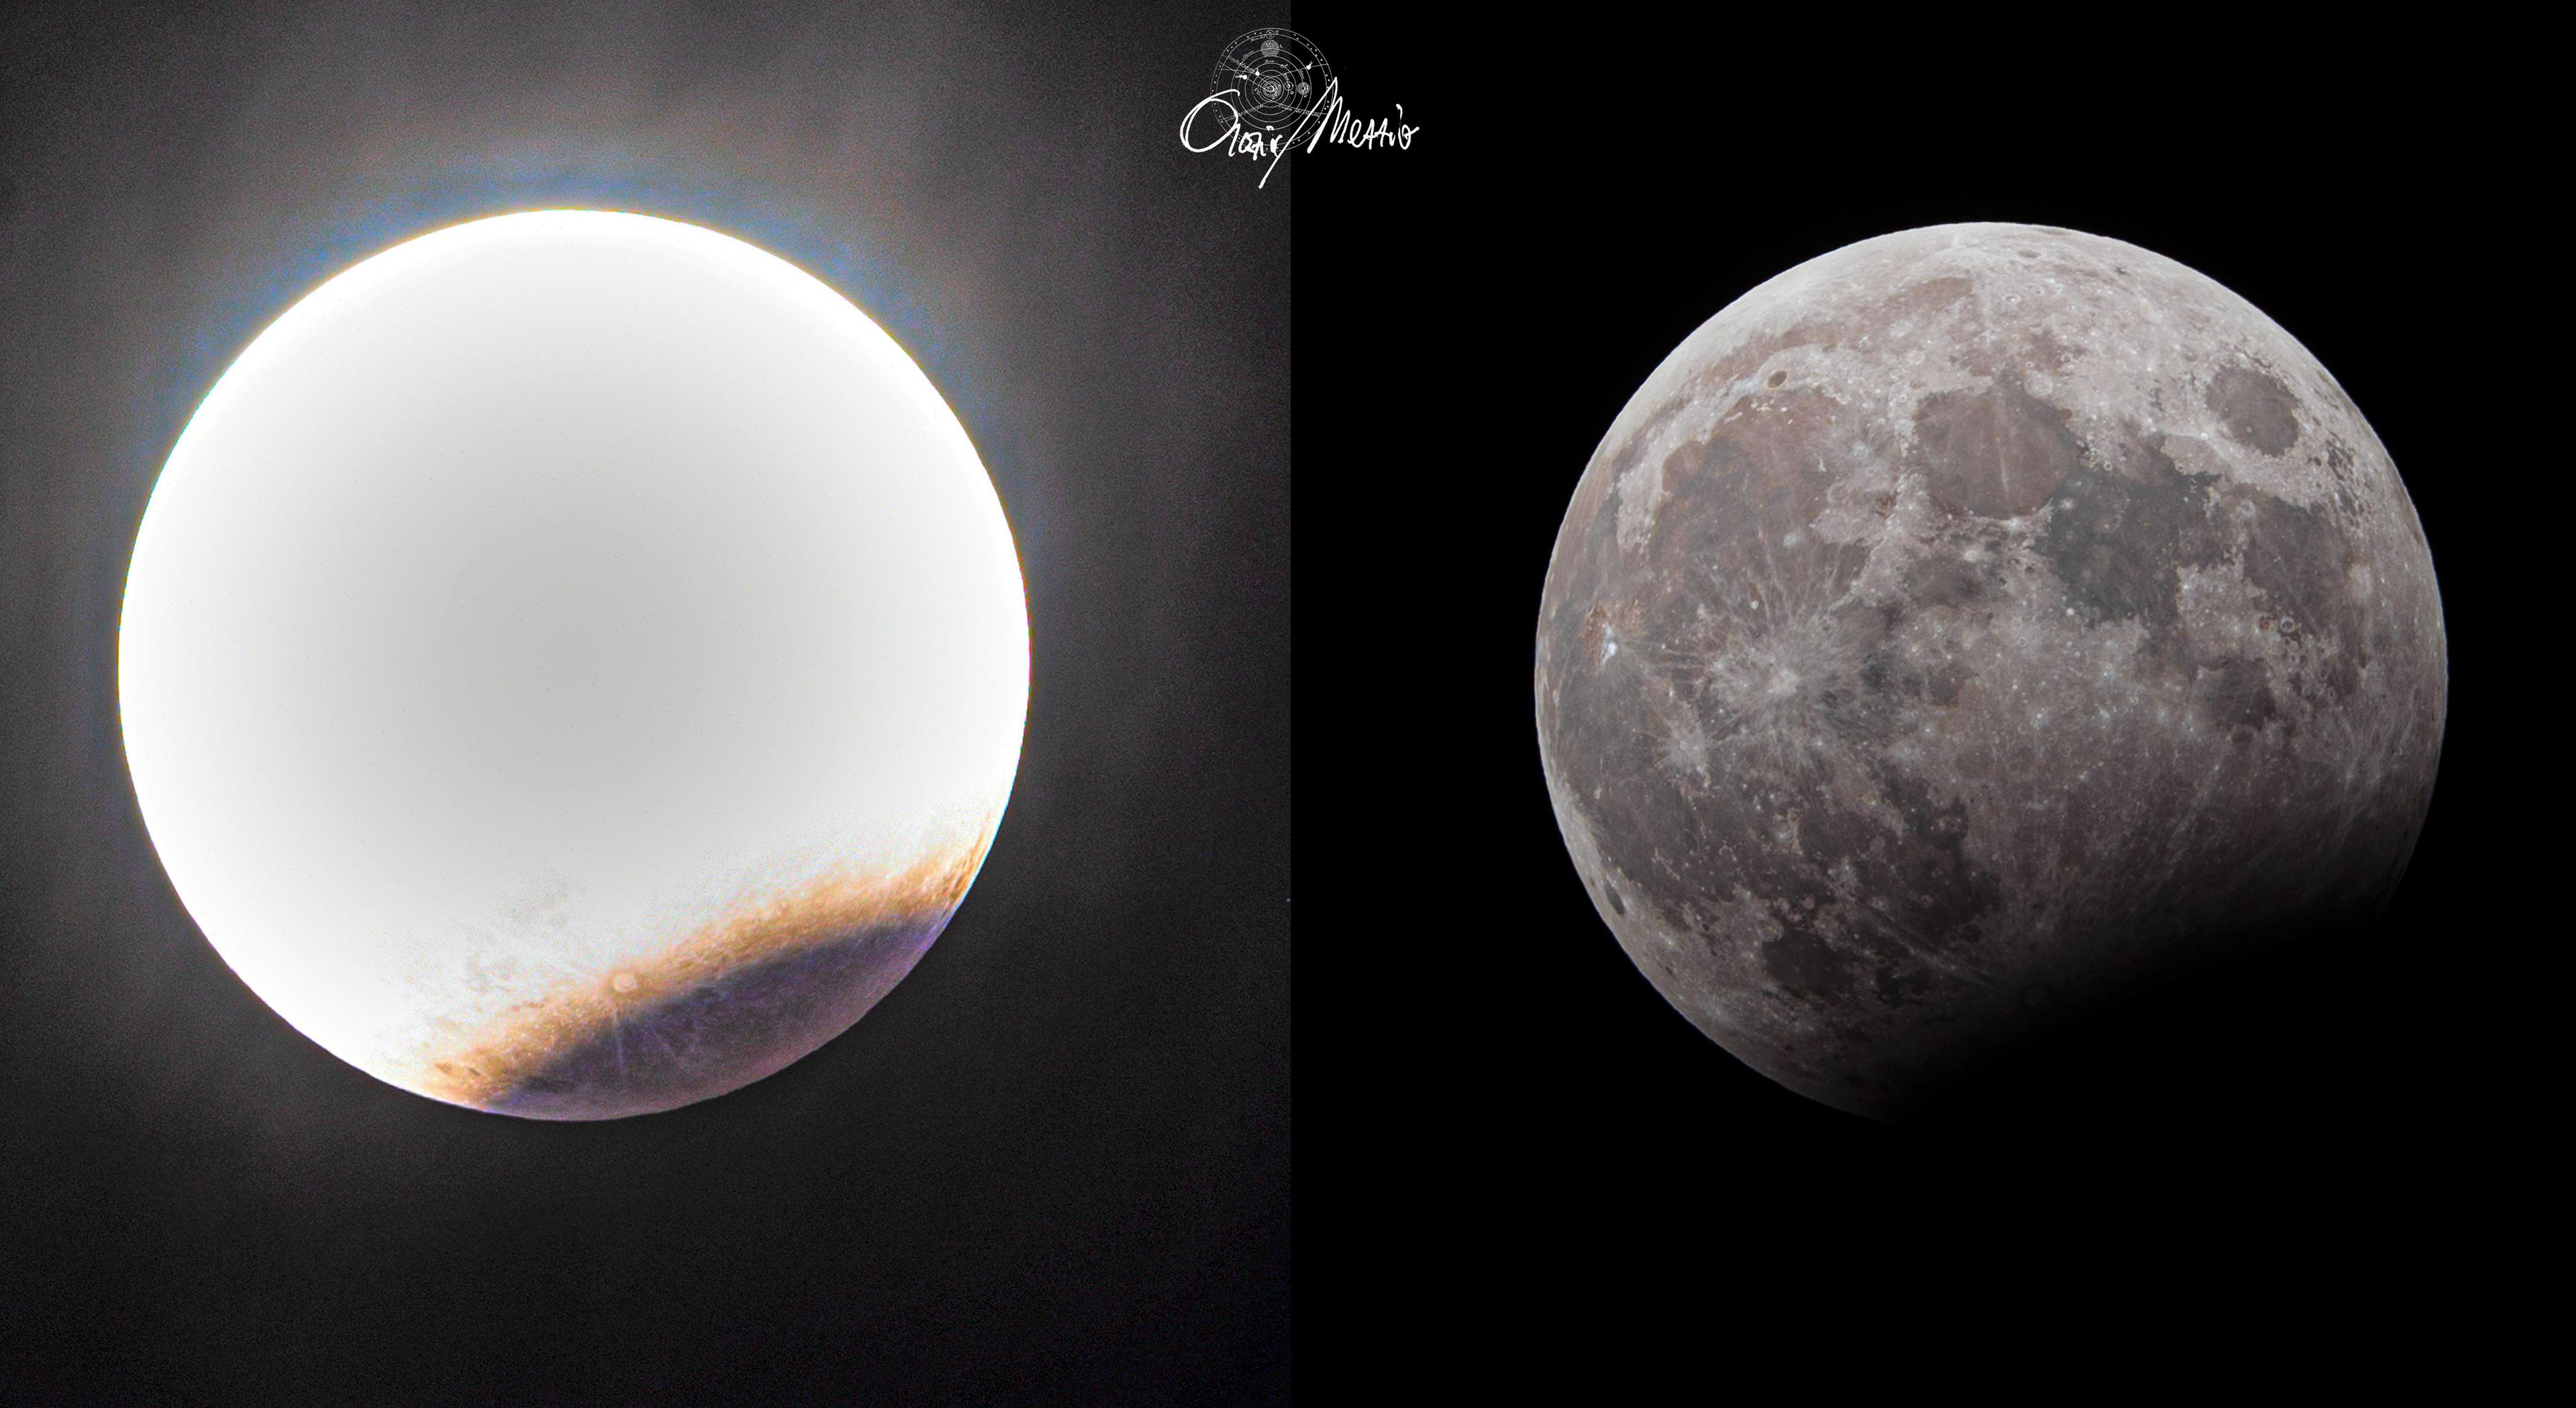 تظهر صورتان لخسوفٍ جزئي. الصورة على اليسار بتعريضٍ زائدٍ في كلّ مكان ما عدا أسفل اليمين حيث يكون الجزء المخسوف من القمر مرئيّاً. على الصورة اليُمنى، مُعظم الصورة  بتعريضٍ عاديّ لكنّ الجزء في أسفل اليمين مُظلِم.